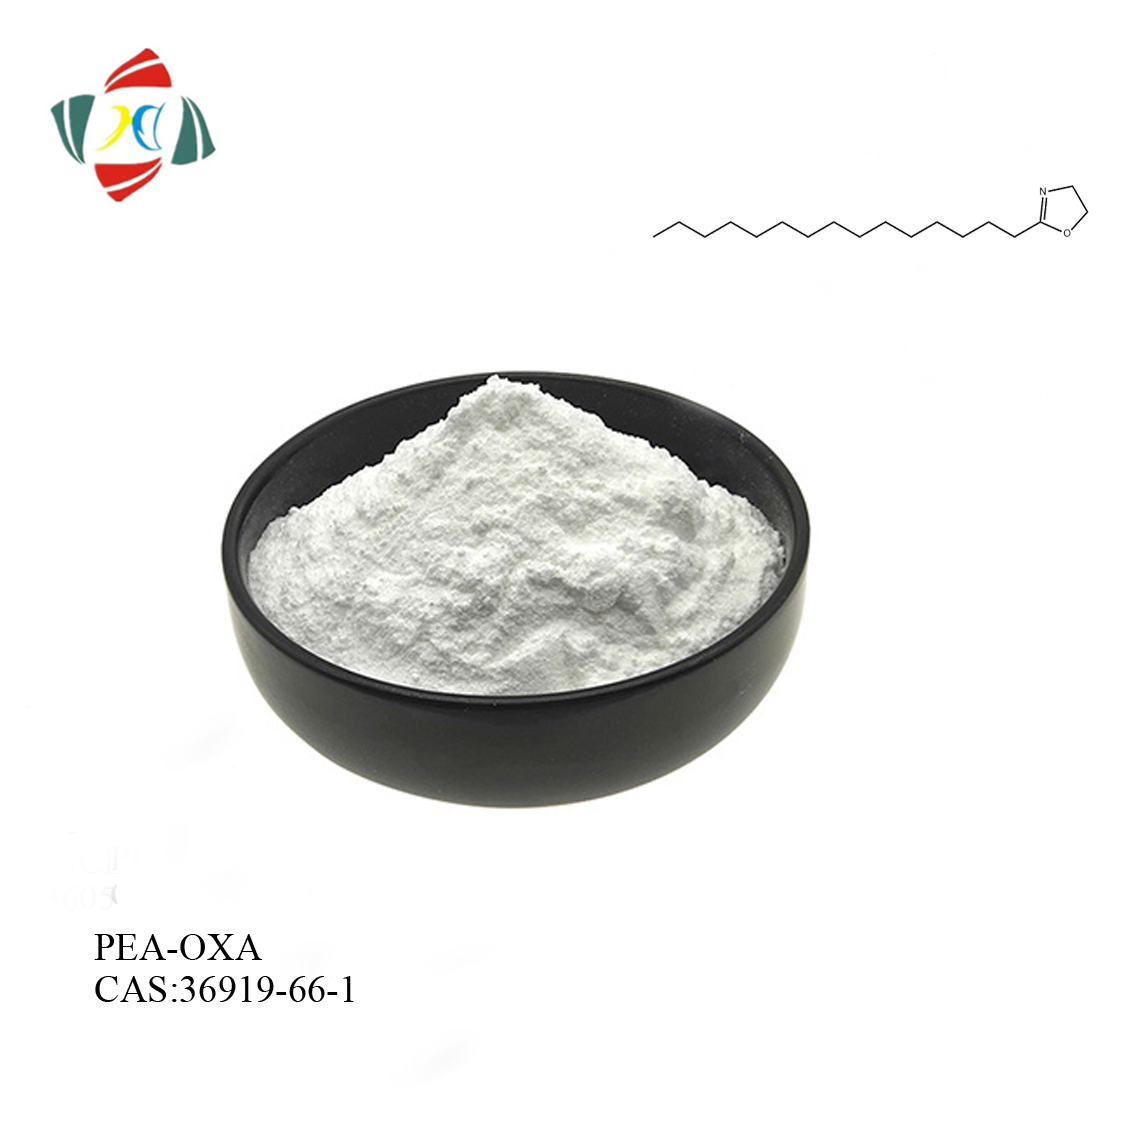 98% N-palmitoiletanolammina-ossazolina (PEA-OXA) CAS 36919-66-1